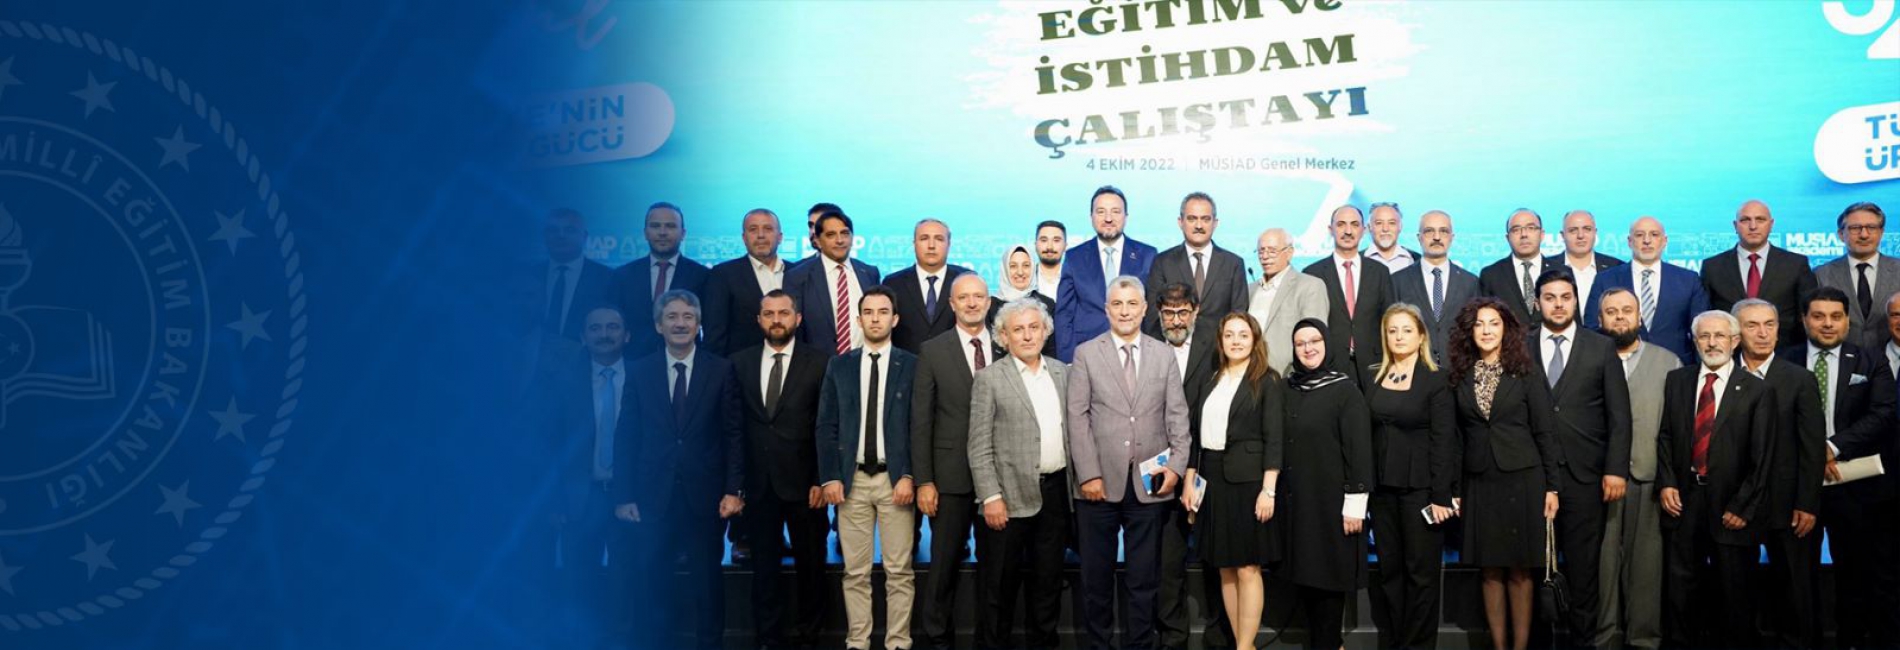 Bakan Özer, MÜSİAD'ın Mesleki Eğitim ve İstihdam Çalıştayı'na Katıldı